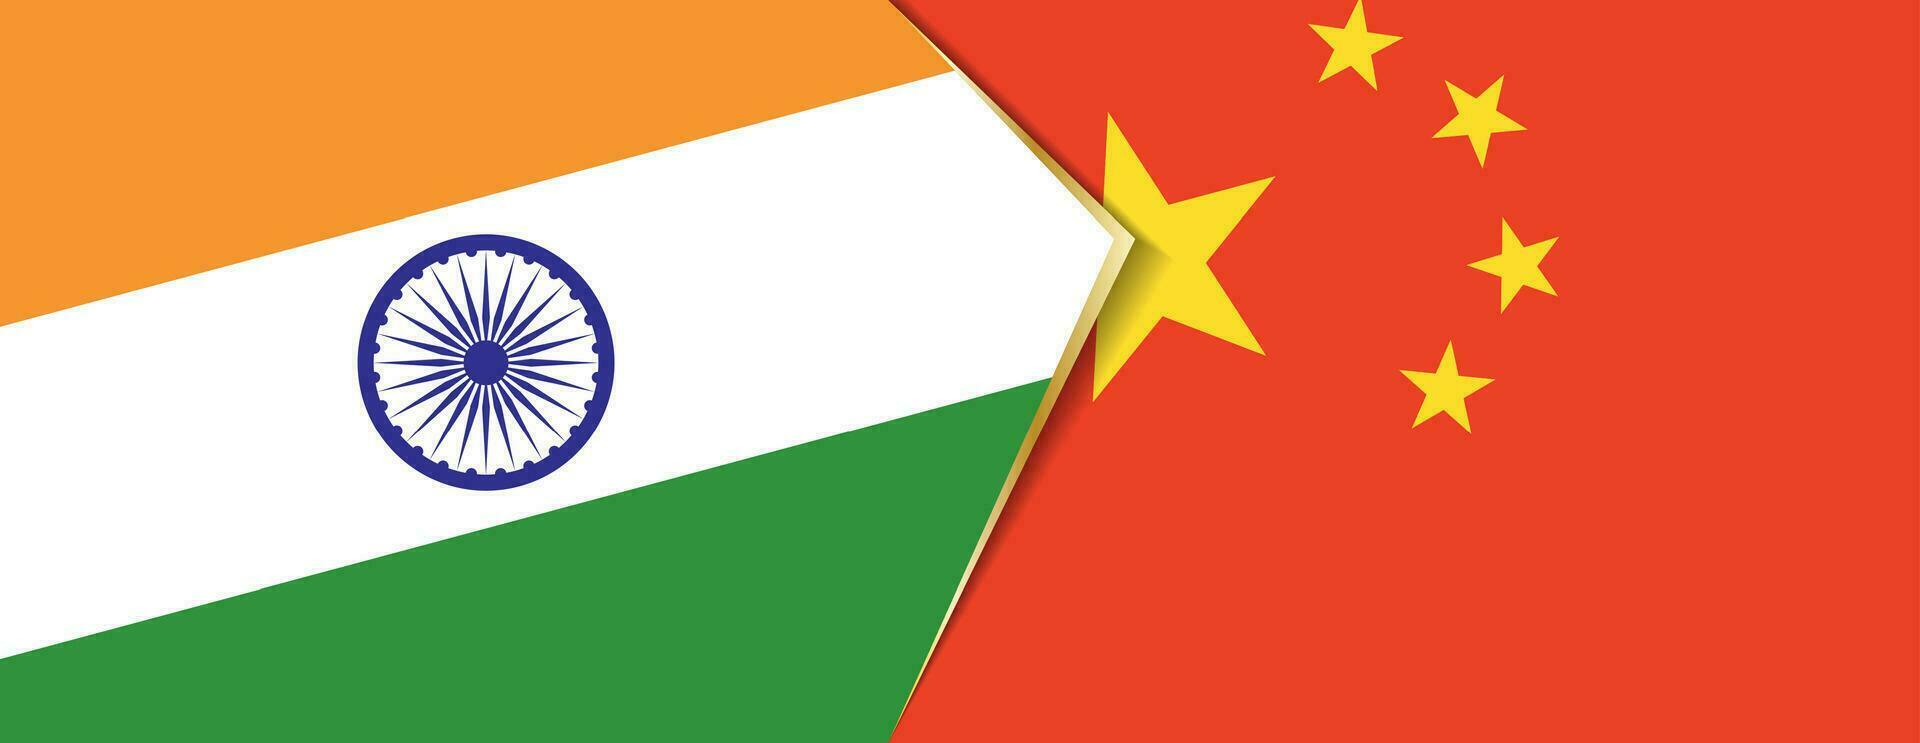 Indien och Kina flaggor, två vektor flaggor.